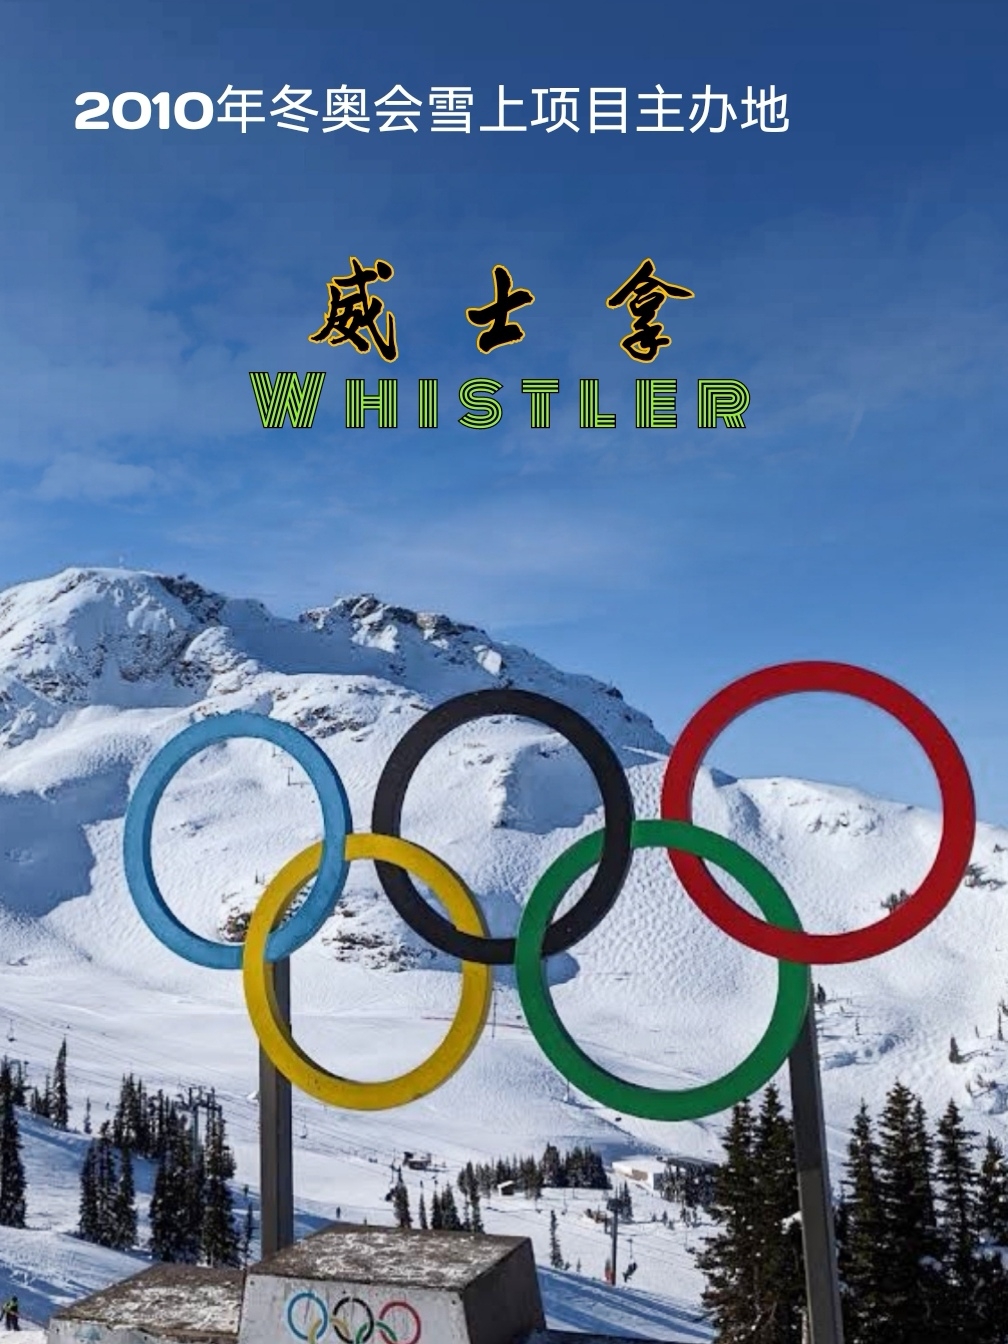 享有“小瑞士”美誉滑雪胜地威士拿，曾是2010年冬奥会举办地